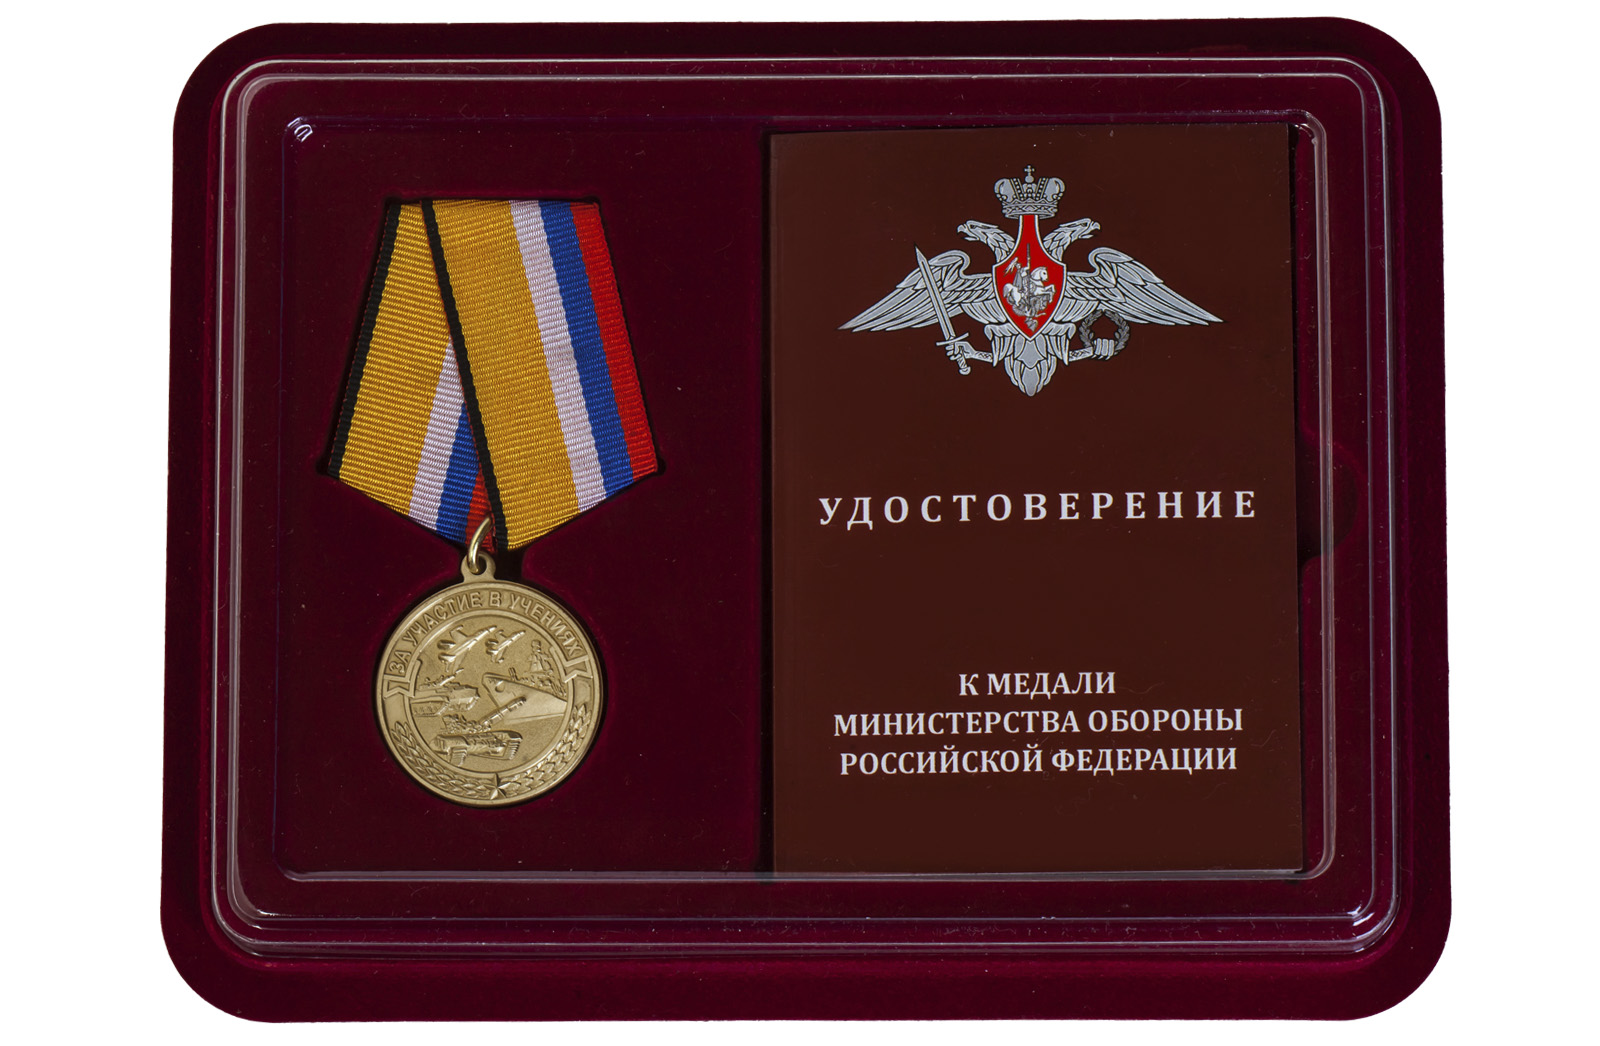 Купить памятную медаль За участие в учениях МО РФ по лучшей цене